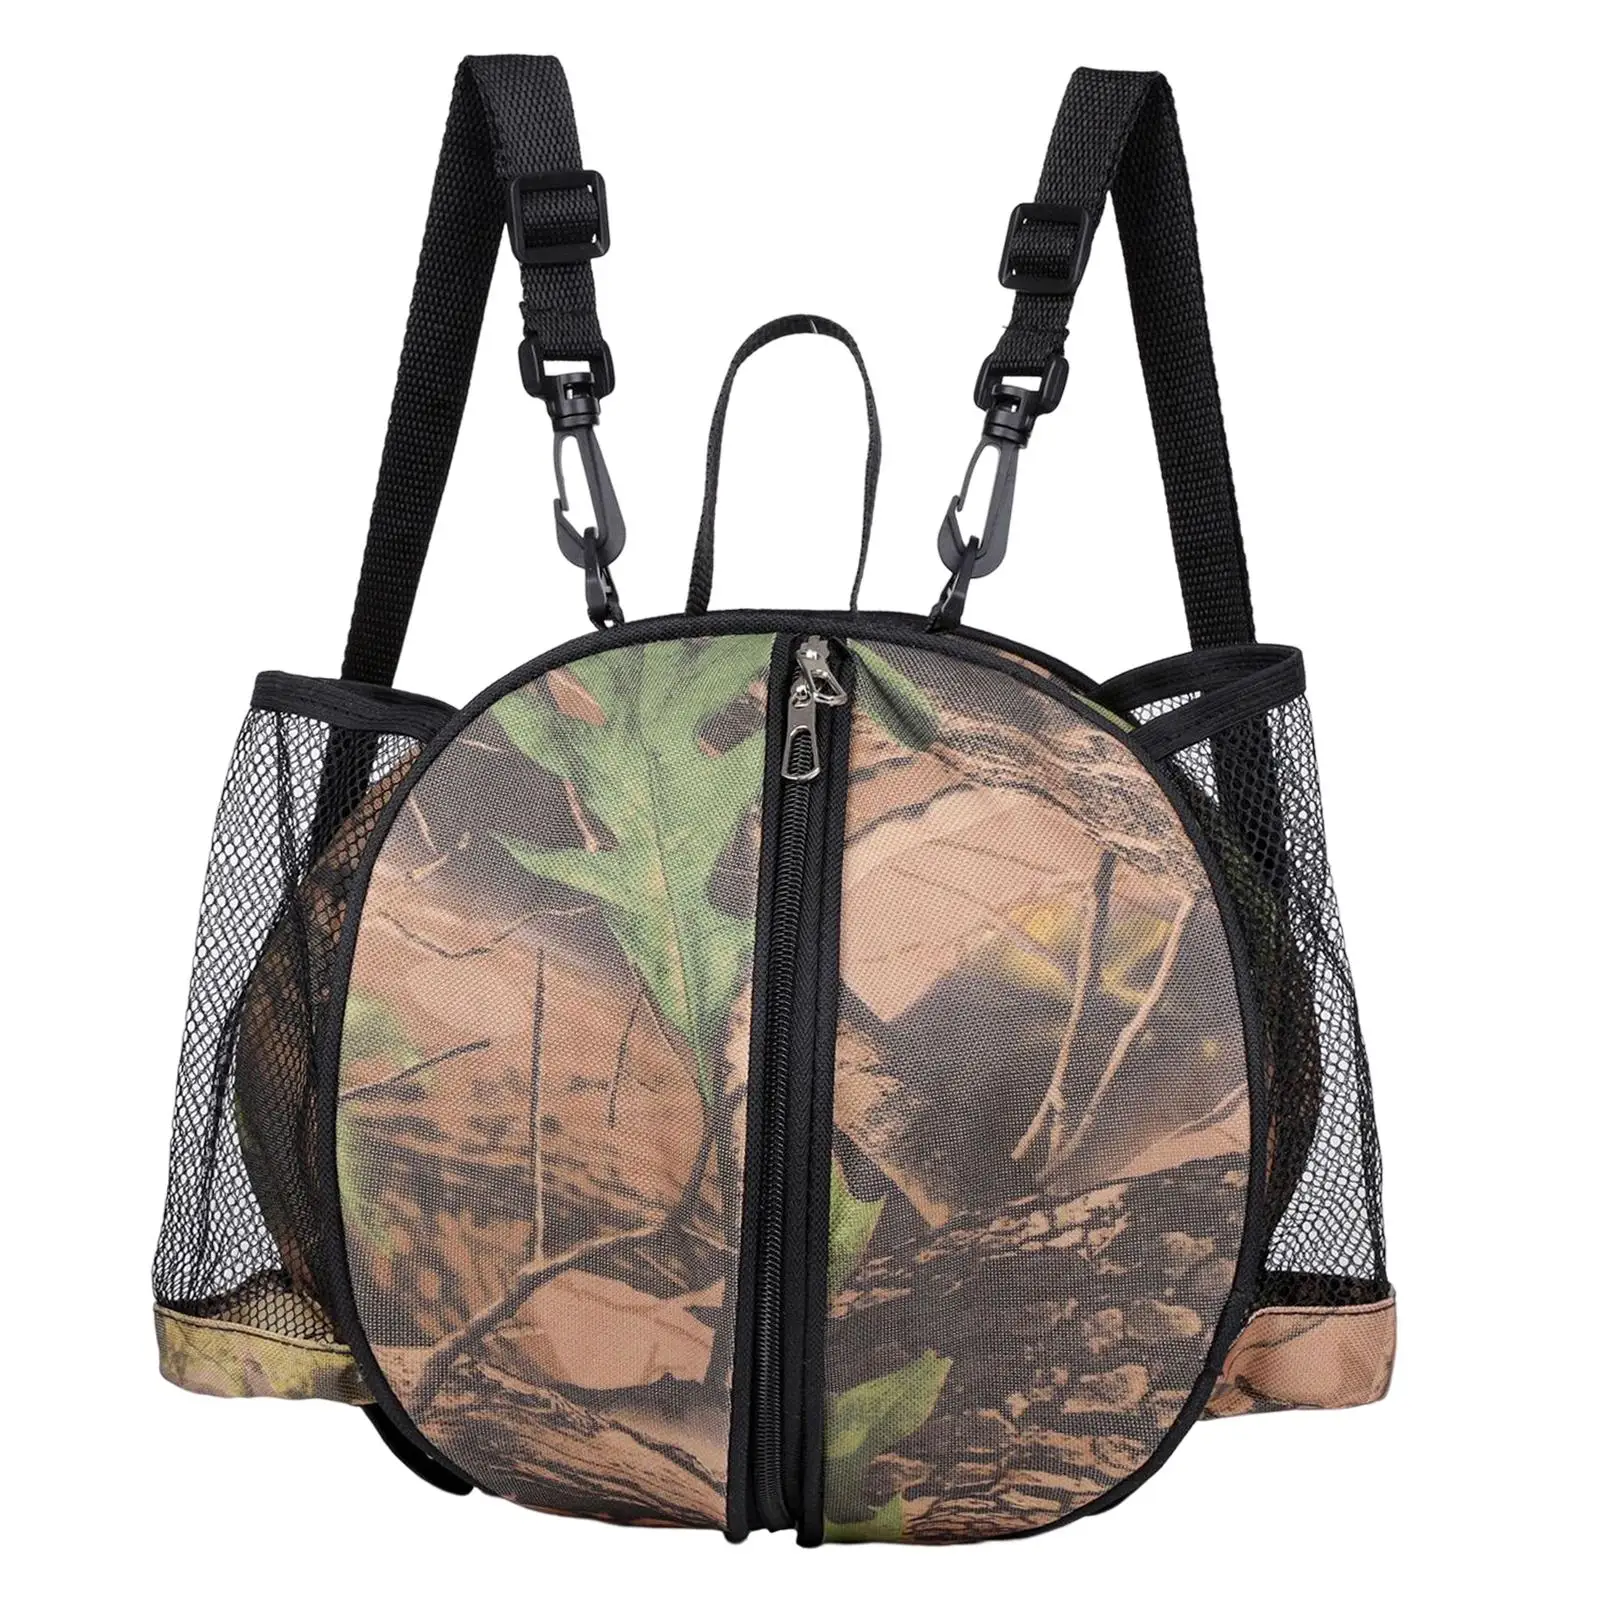 Basketball Shoulder Bag Backpack Basketball Tote Bag with 2 Side Pockets